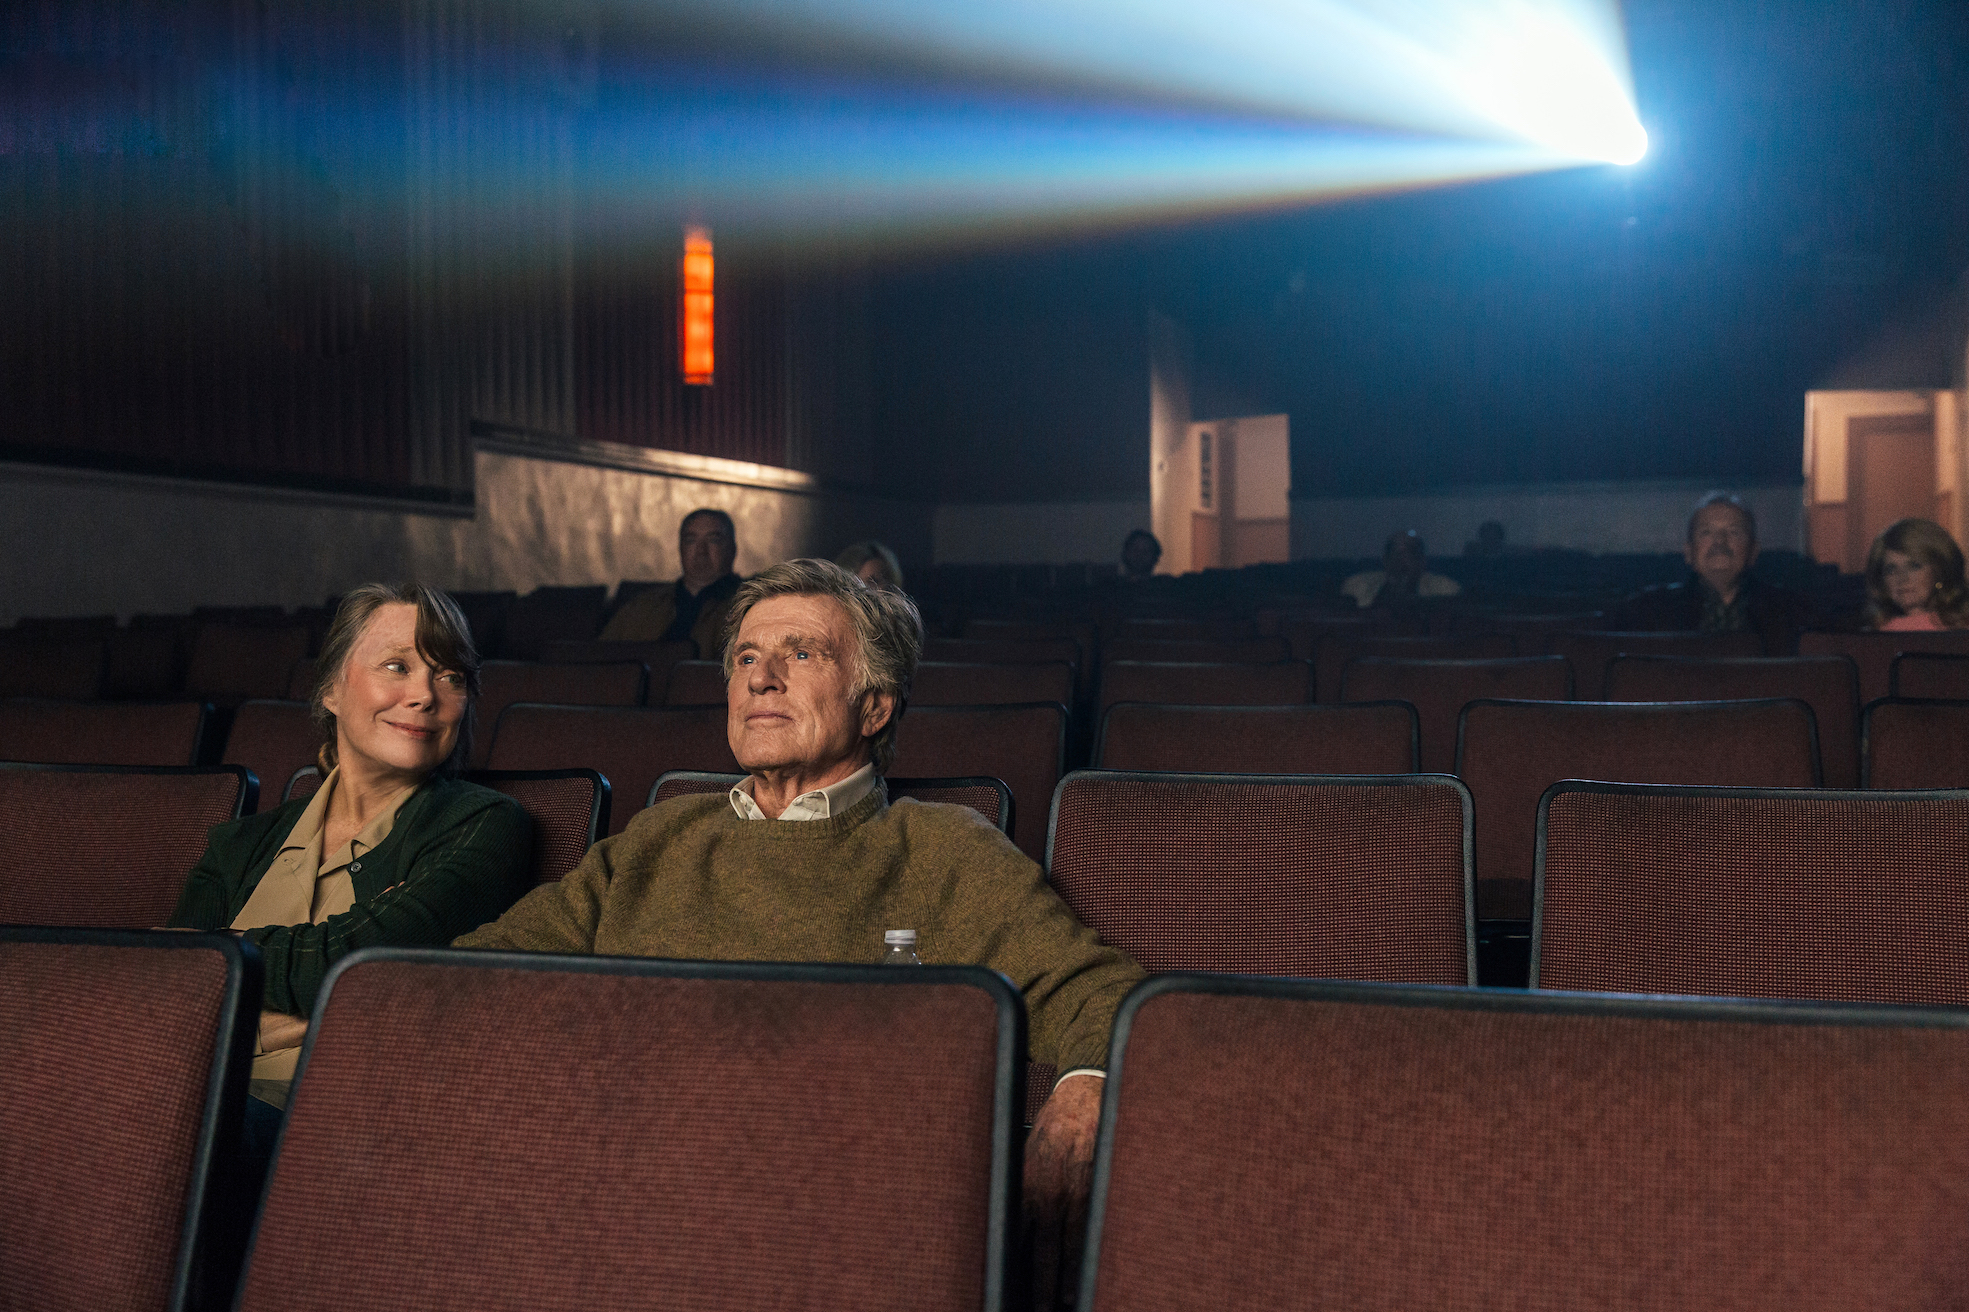 Filmstill aus "Ein Gauner & Gentleman": Ein Mann und eine Frau im Kino, sie lächelt ihn an.